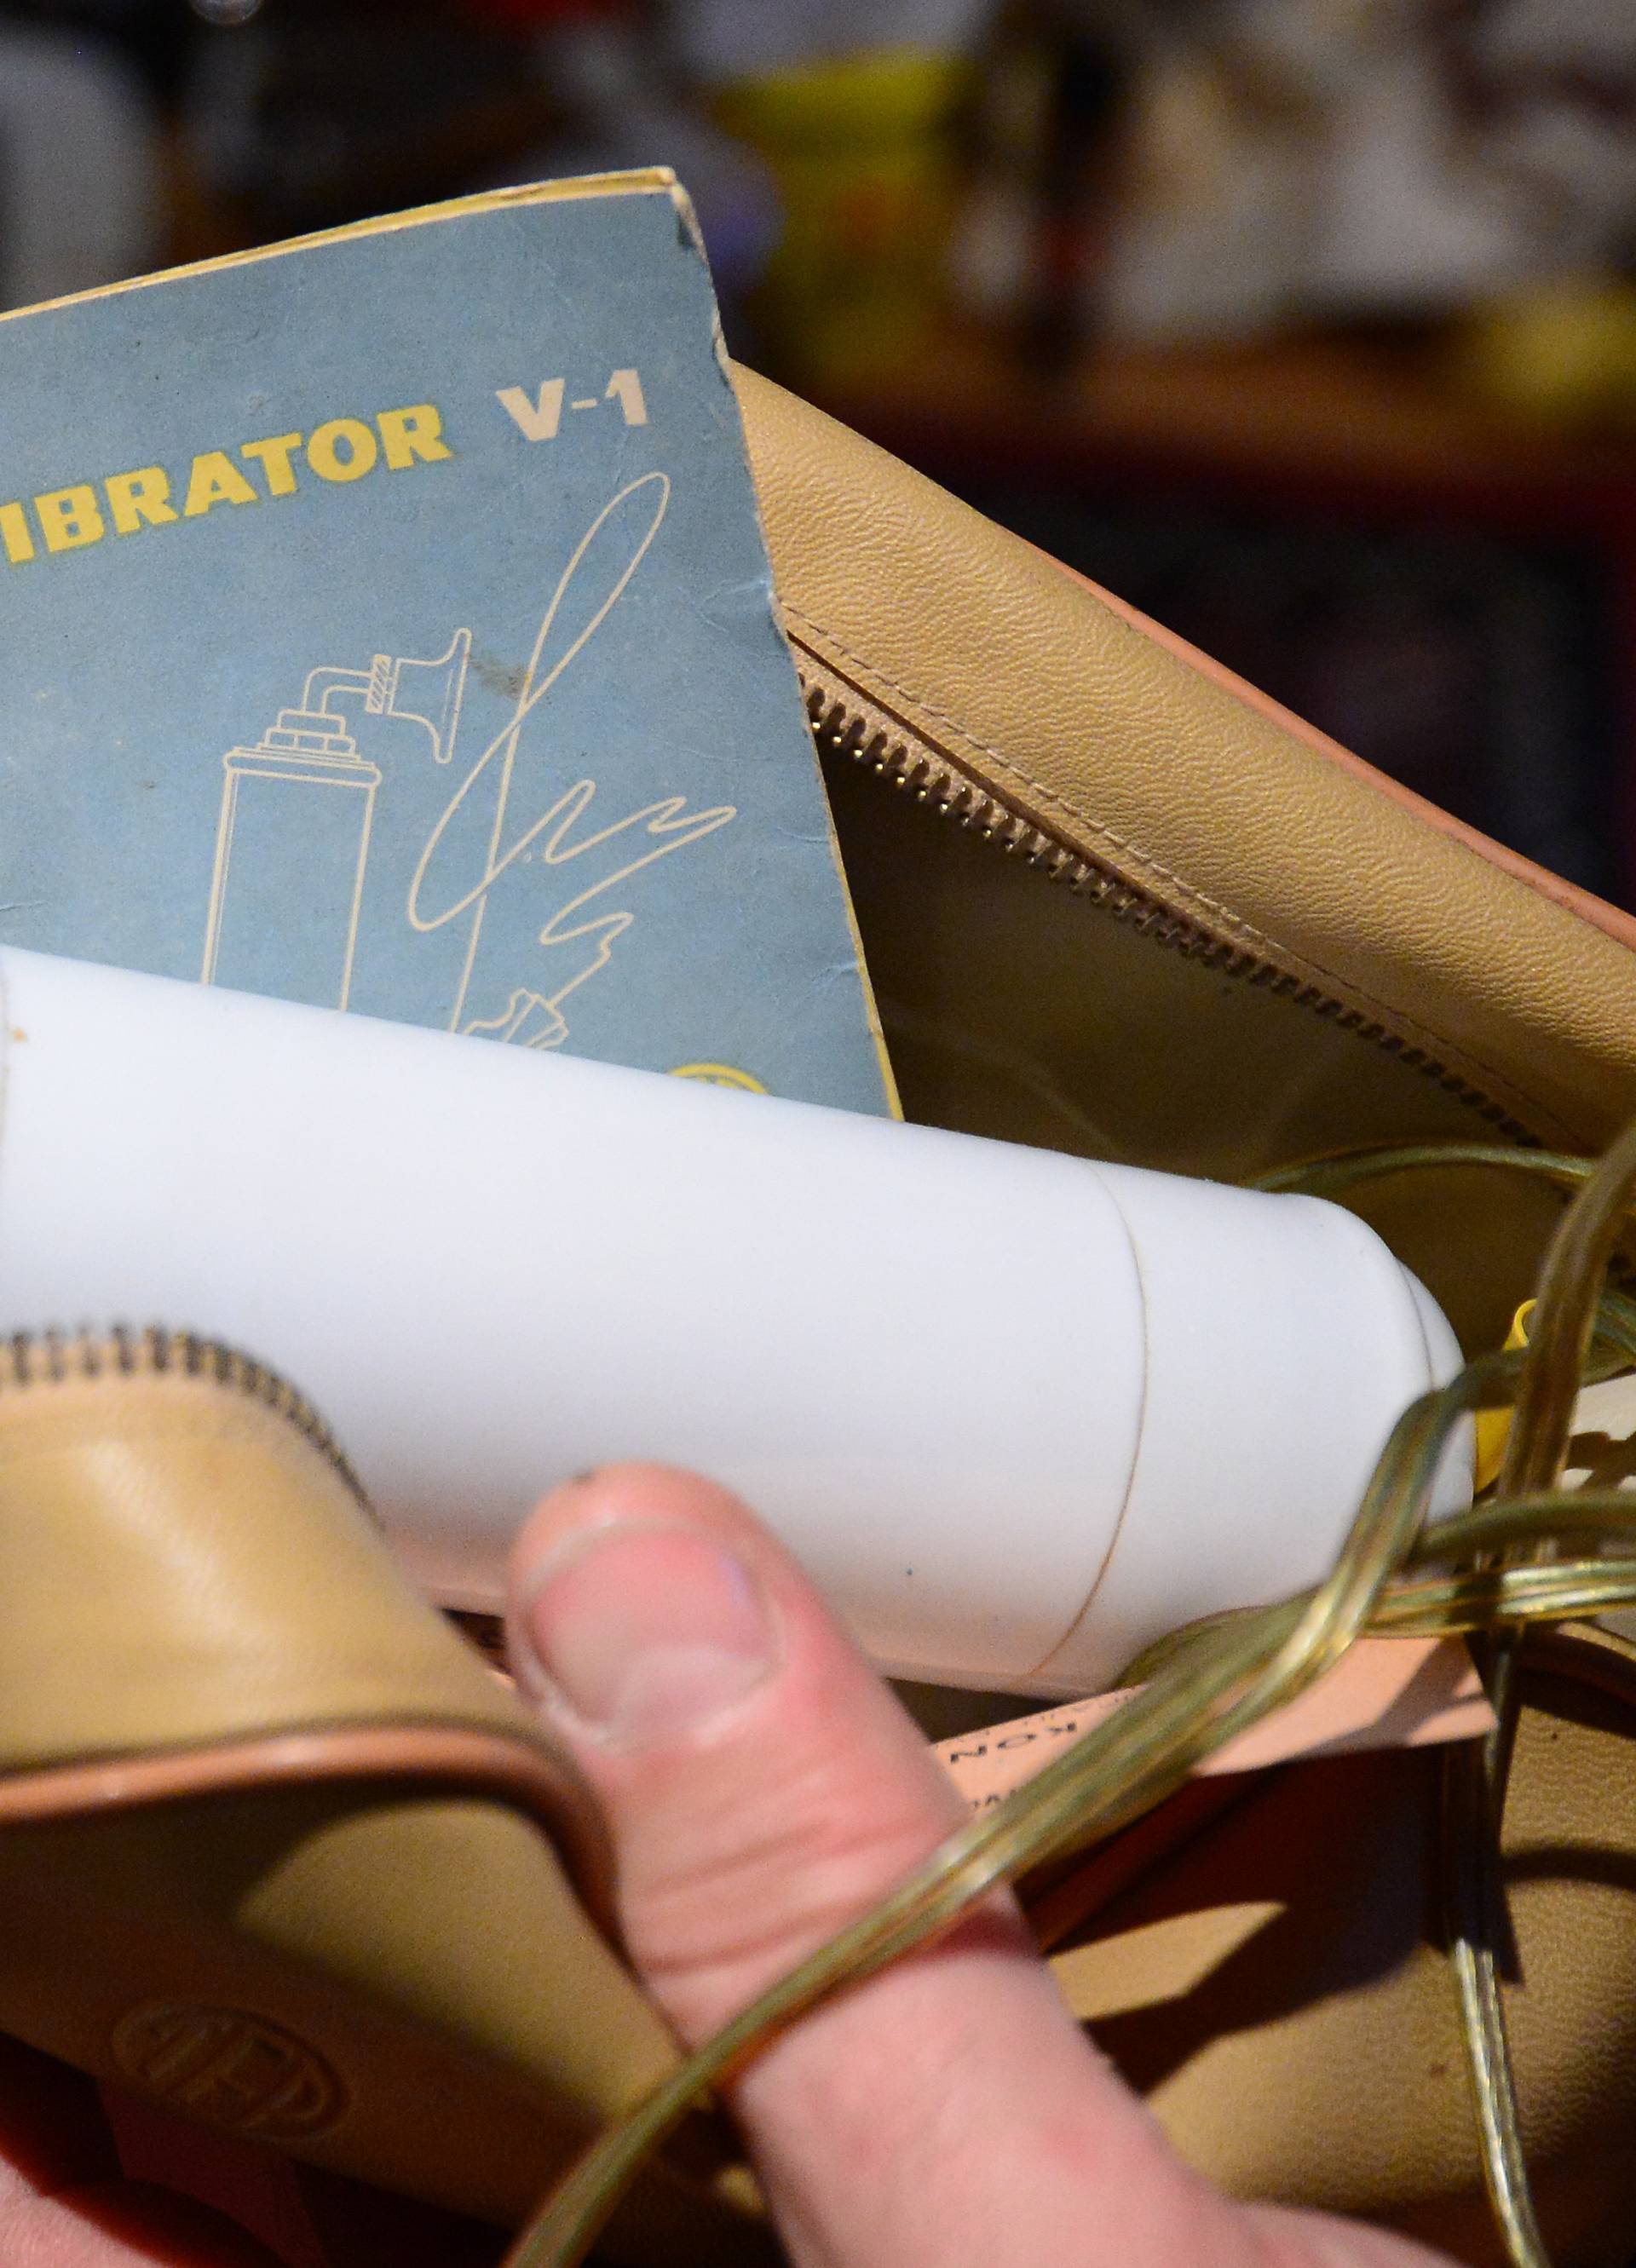 Čak i vibrator: Sve staro što pronađe ide u njegovu kolekciju